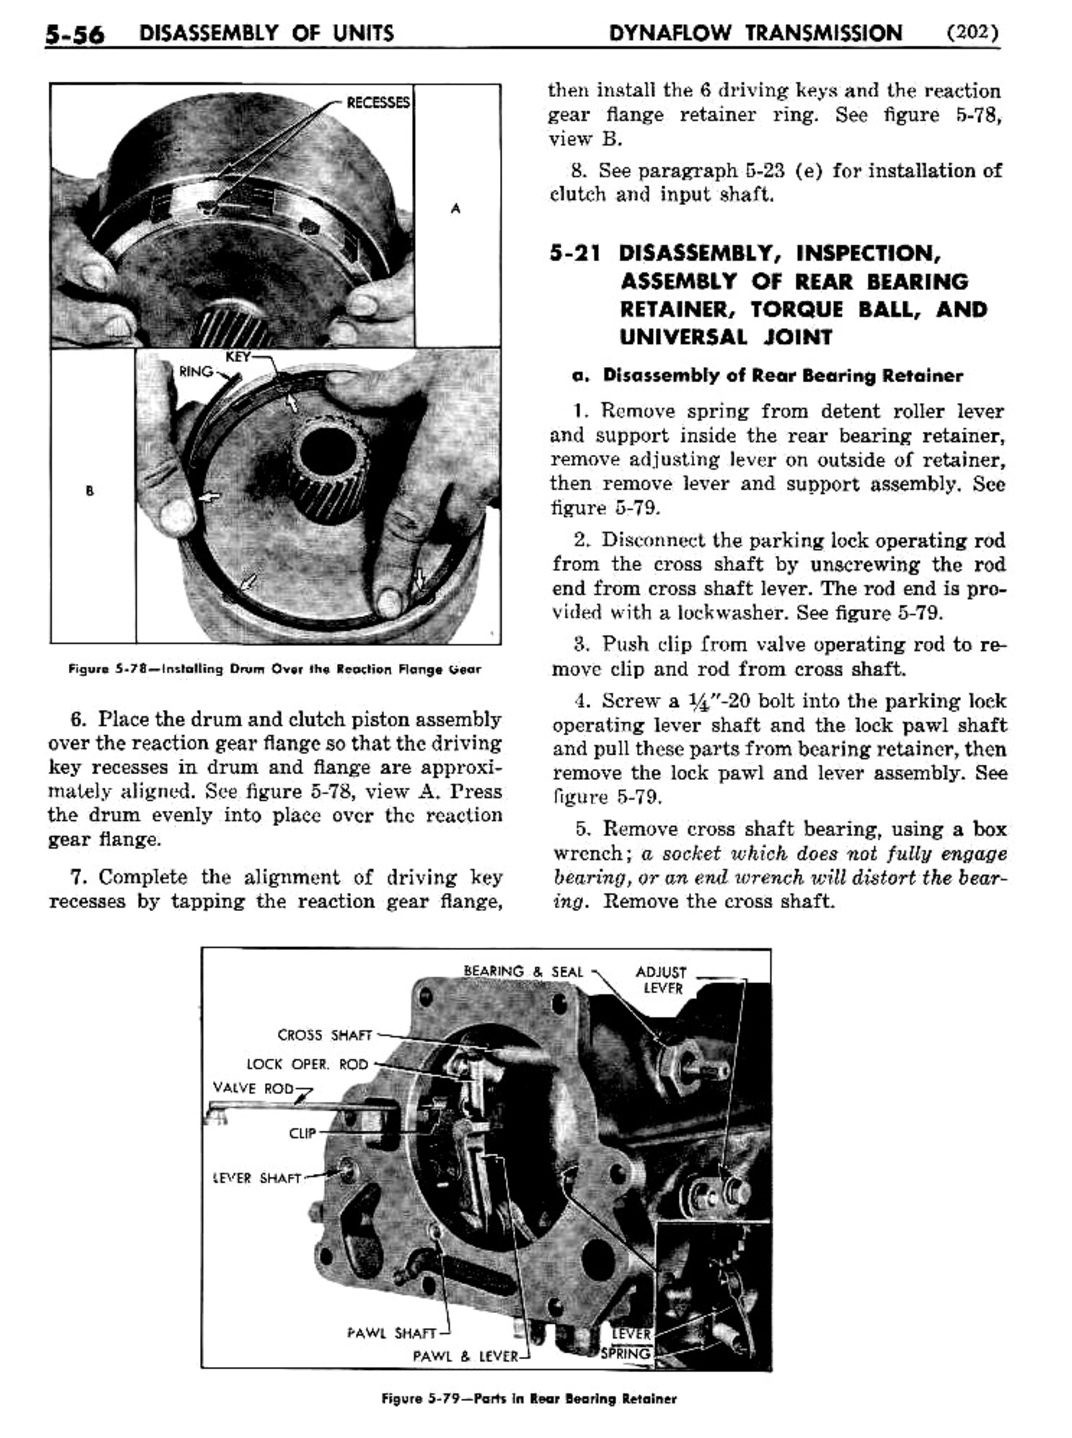 n_06 1956 Buick Shop Manual - Dynaflow-056-056.jpg